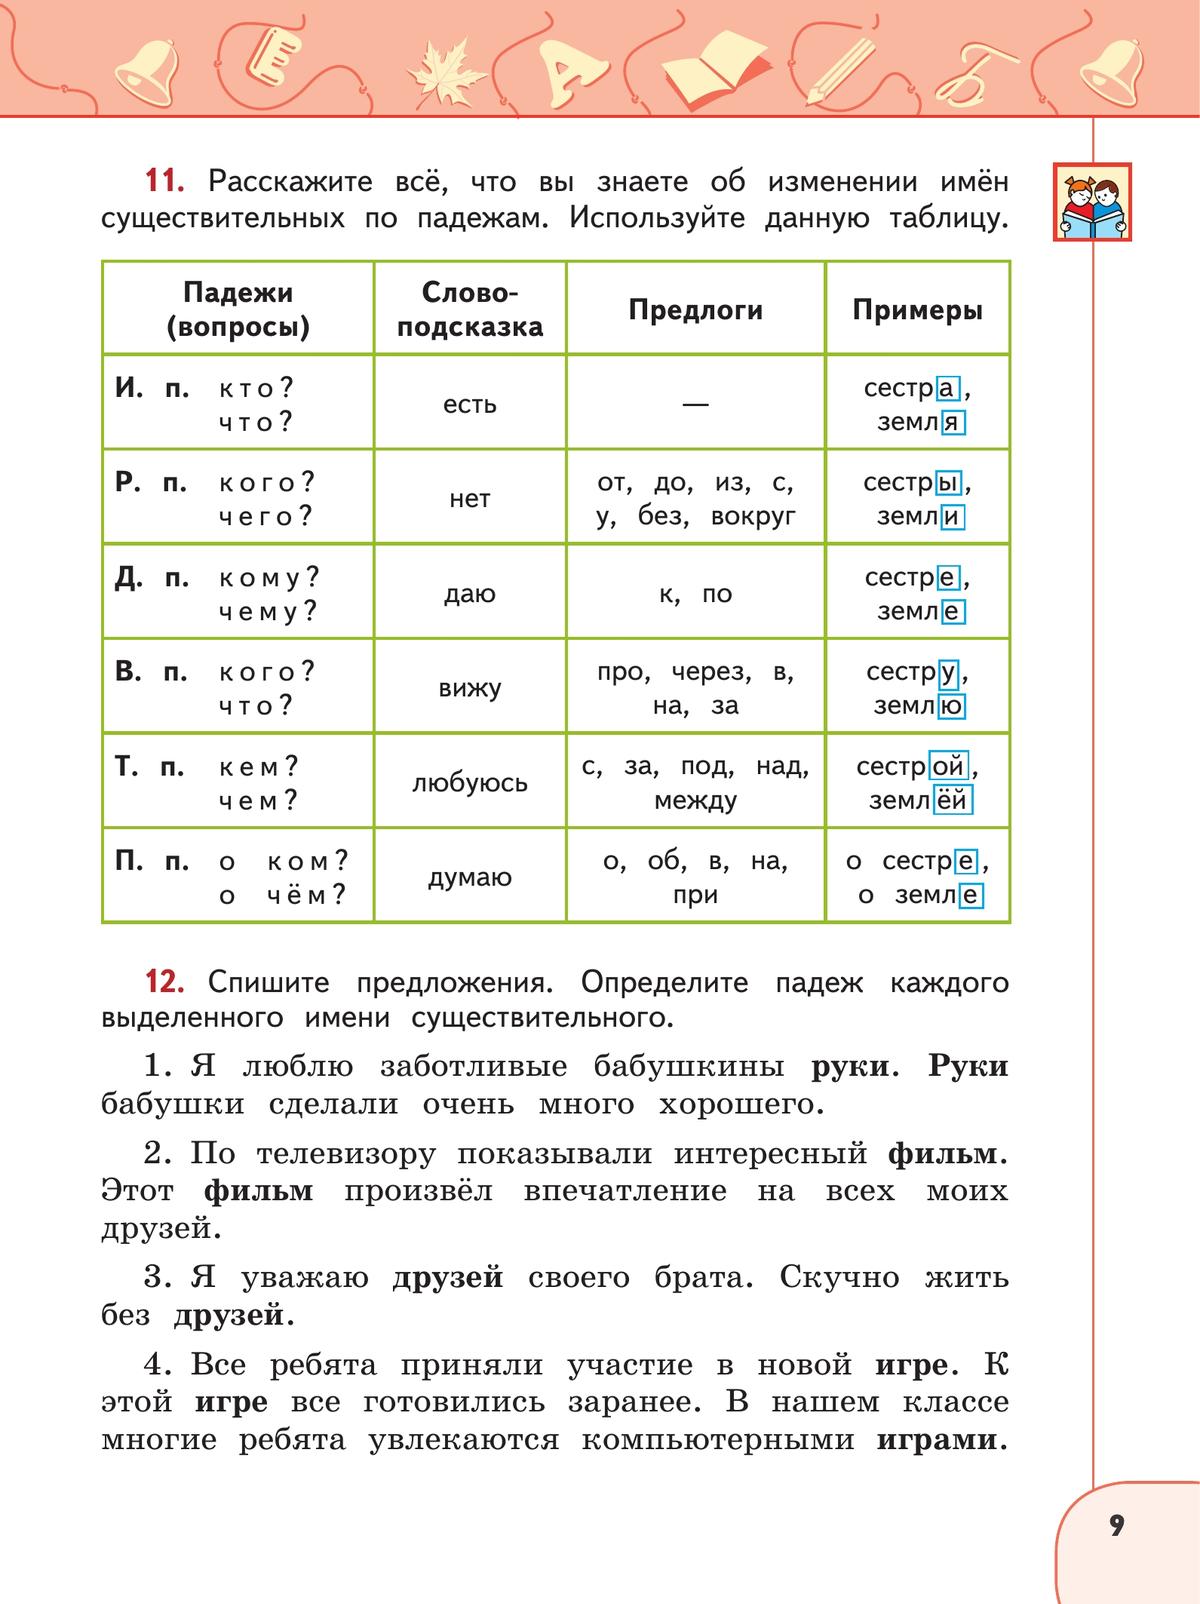 Русский язык. 4 класс. Учебник. В 2 ч. Часть 2 6